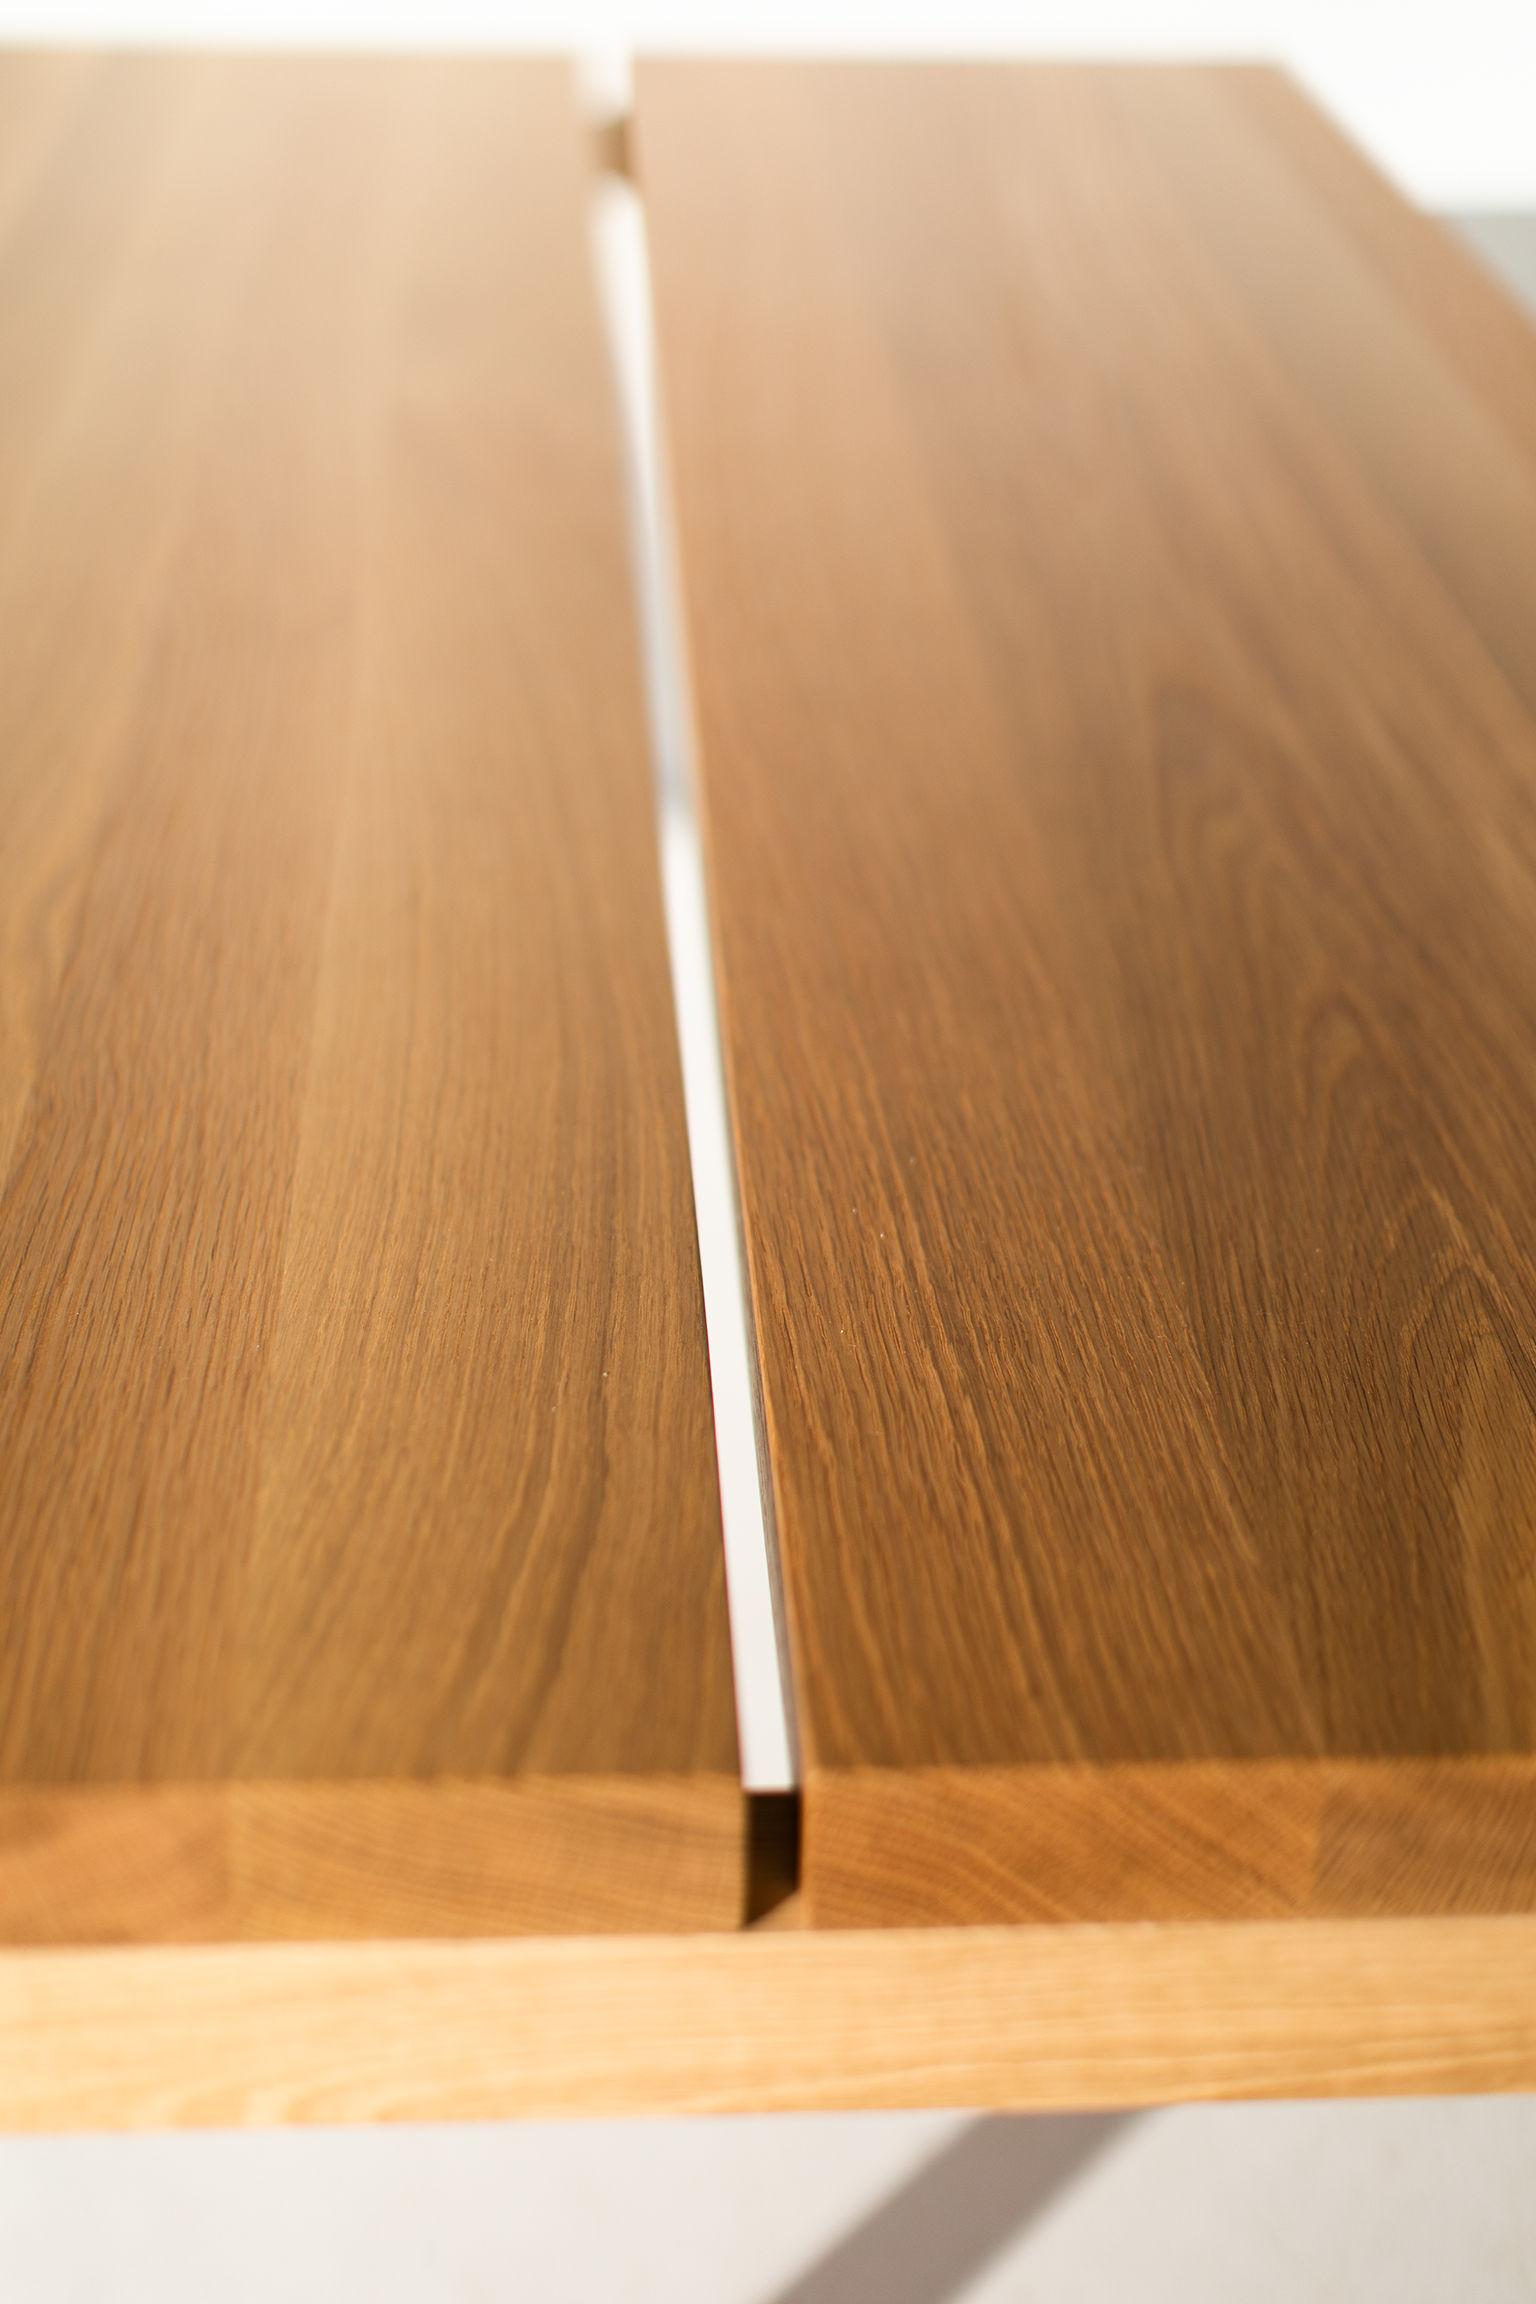 white oak modern dining table